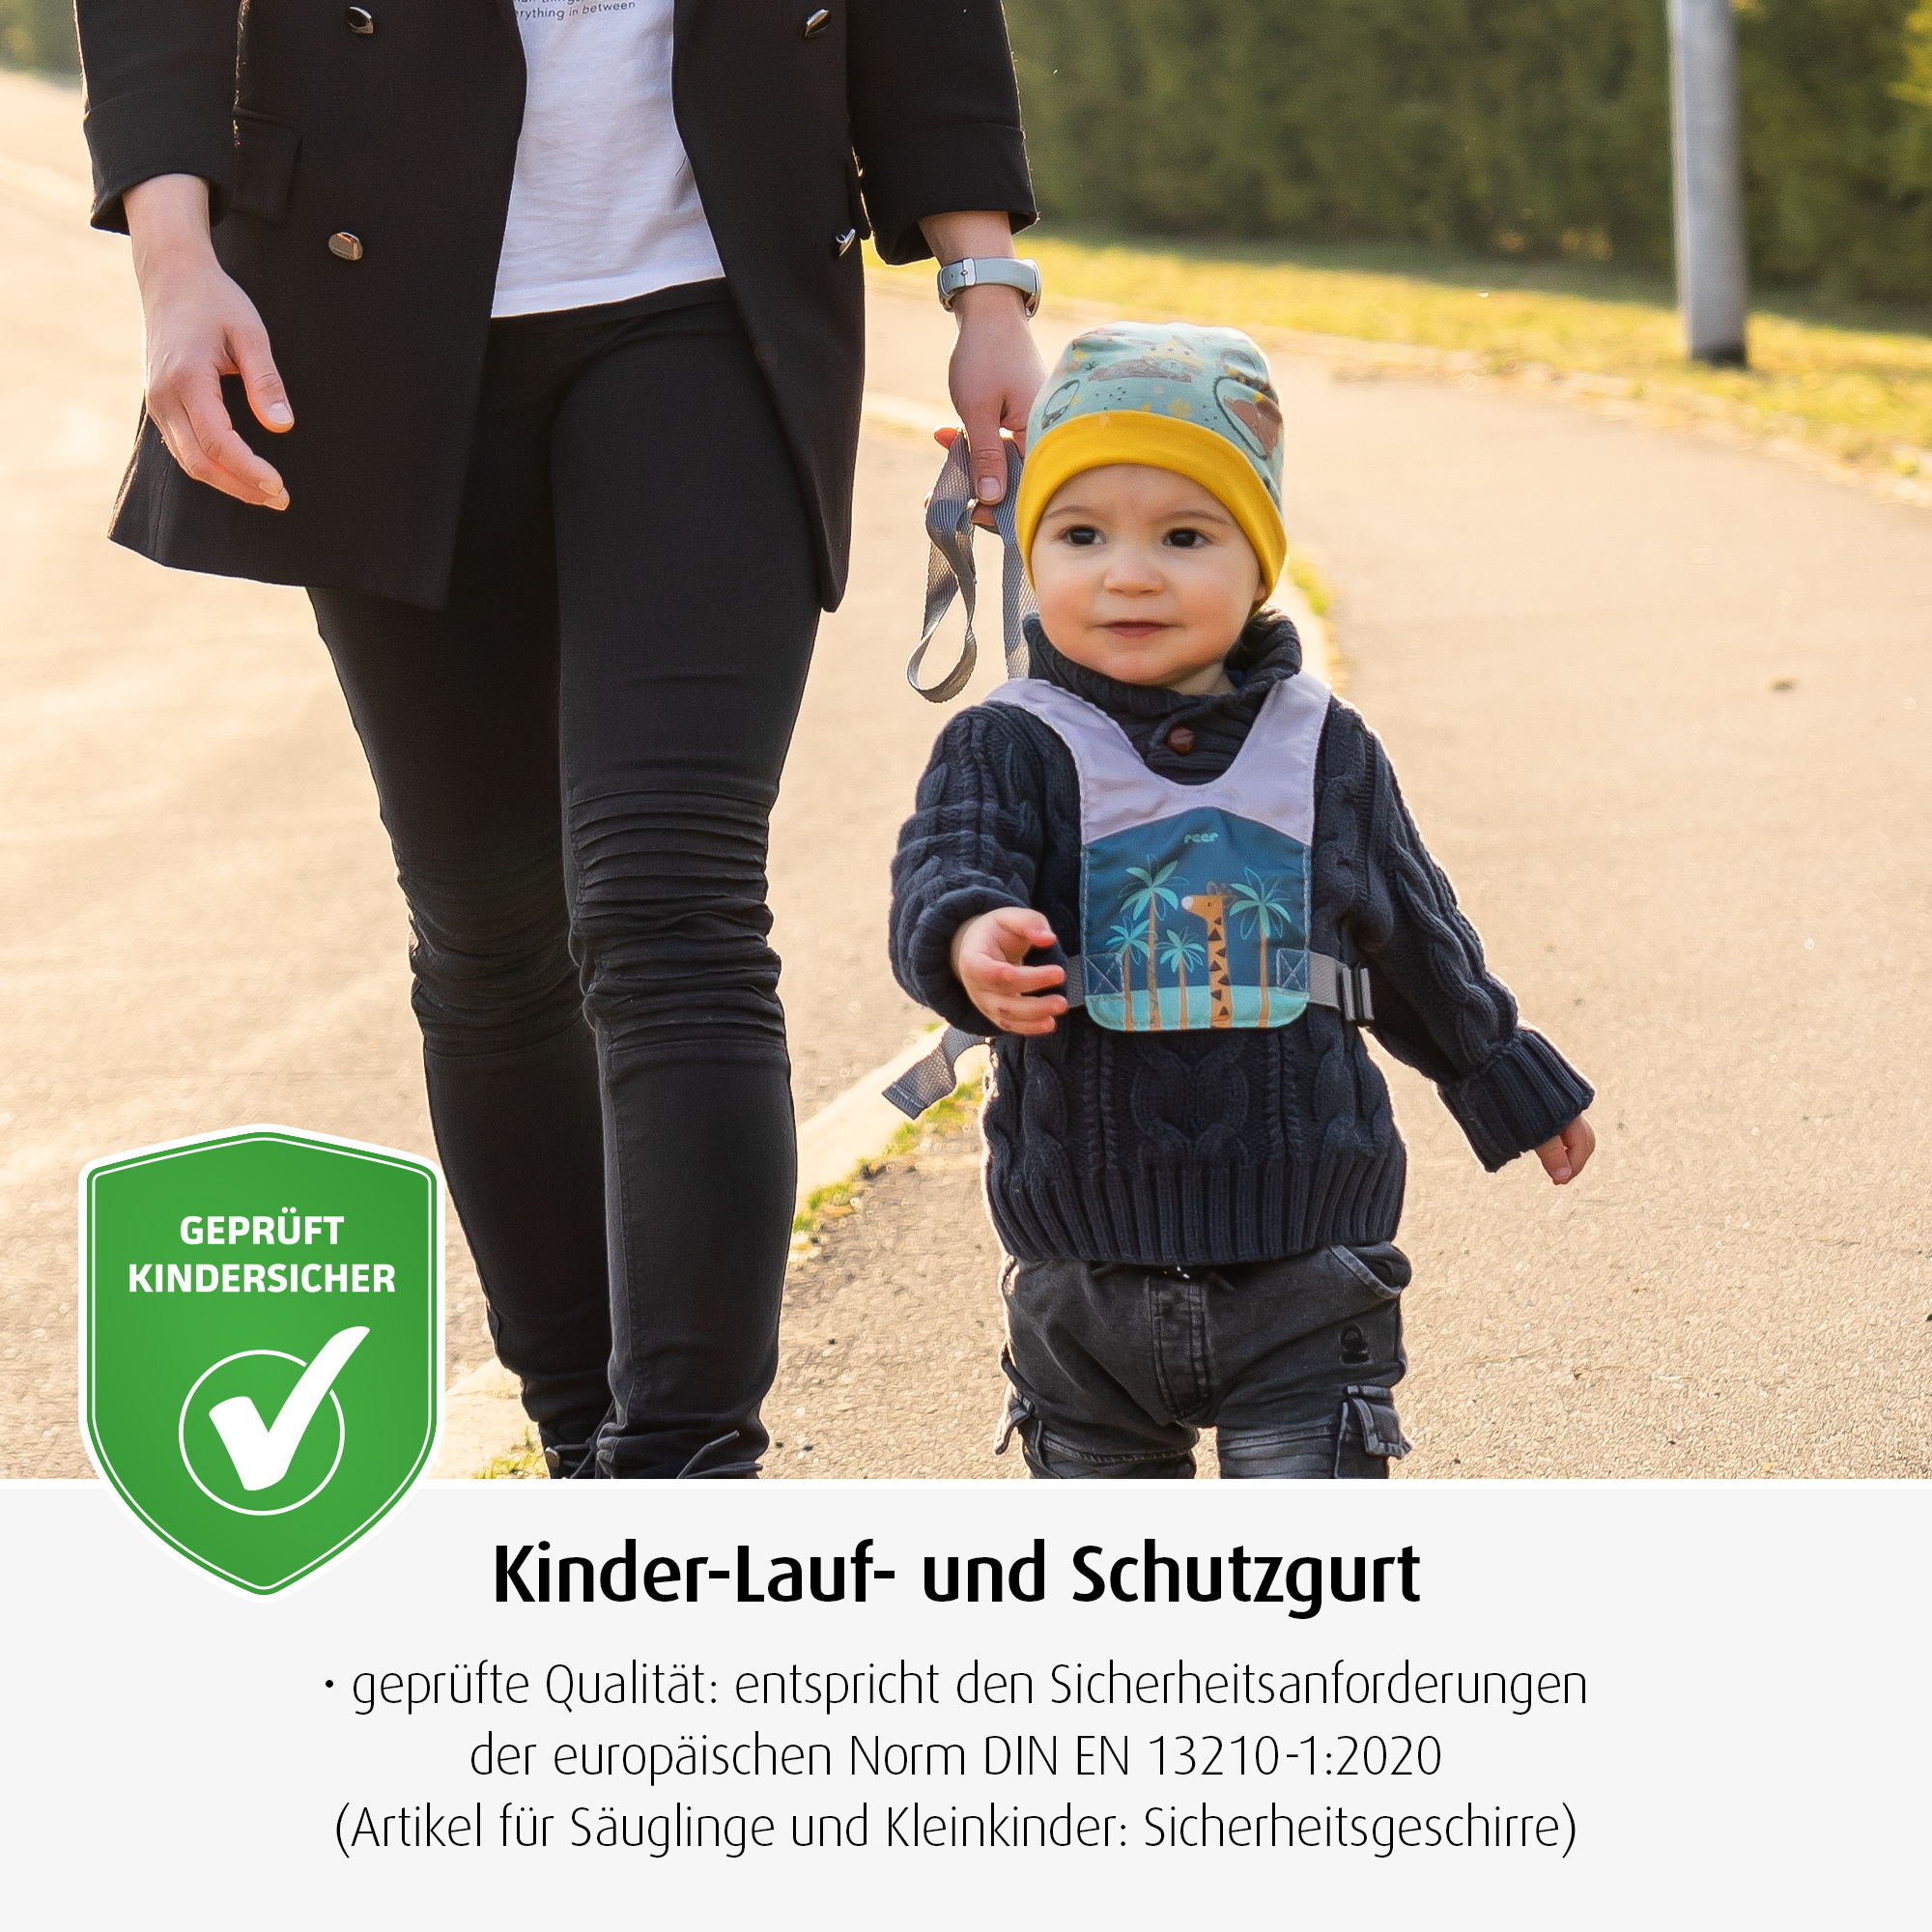 TravelkidGo Kinder-Lauf- und Schutzgurt